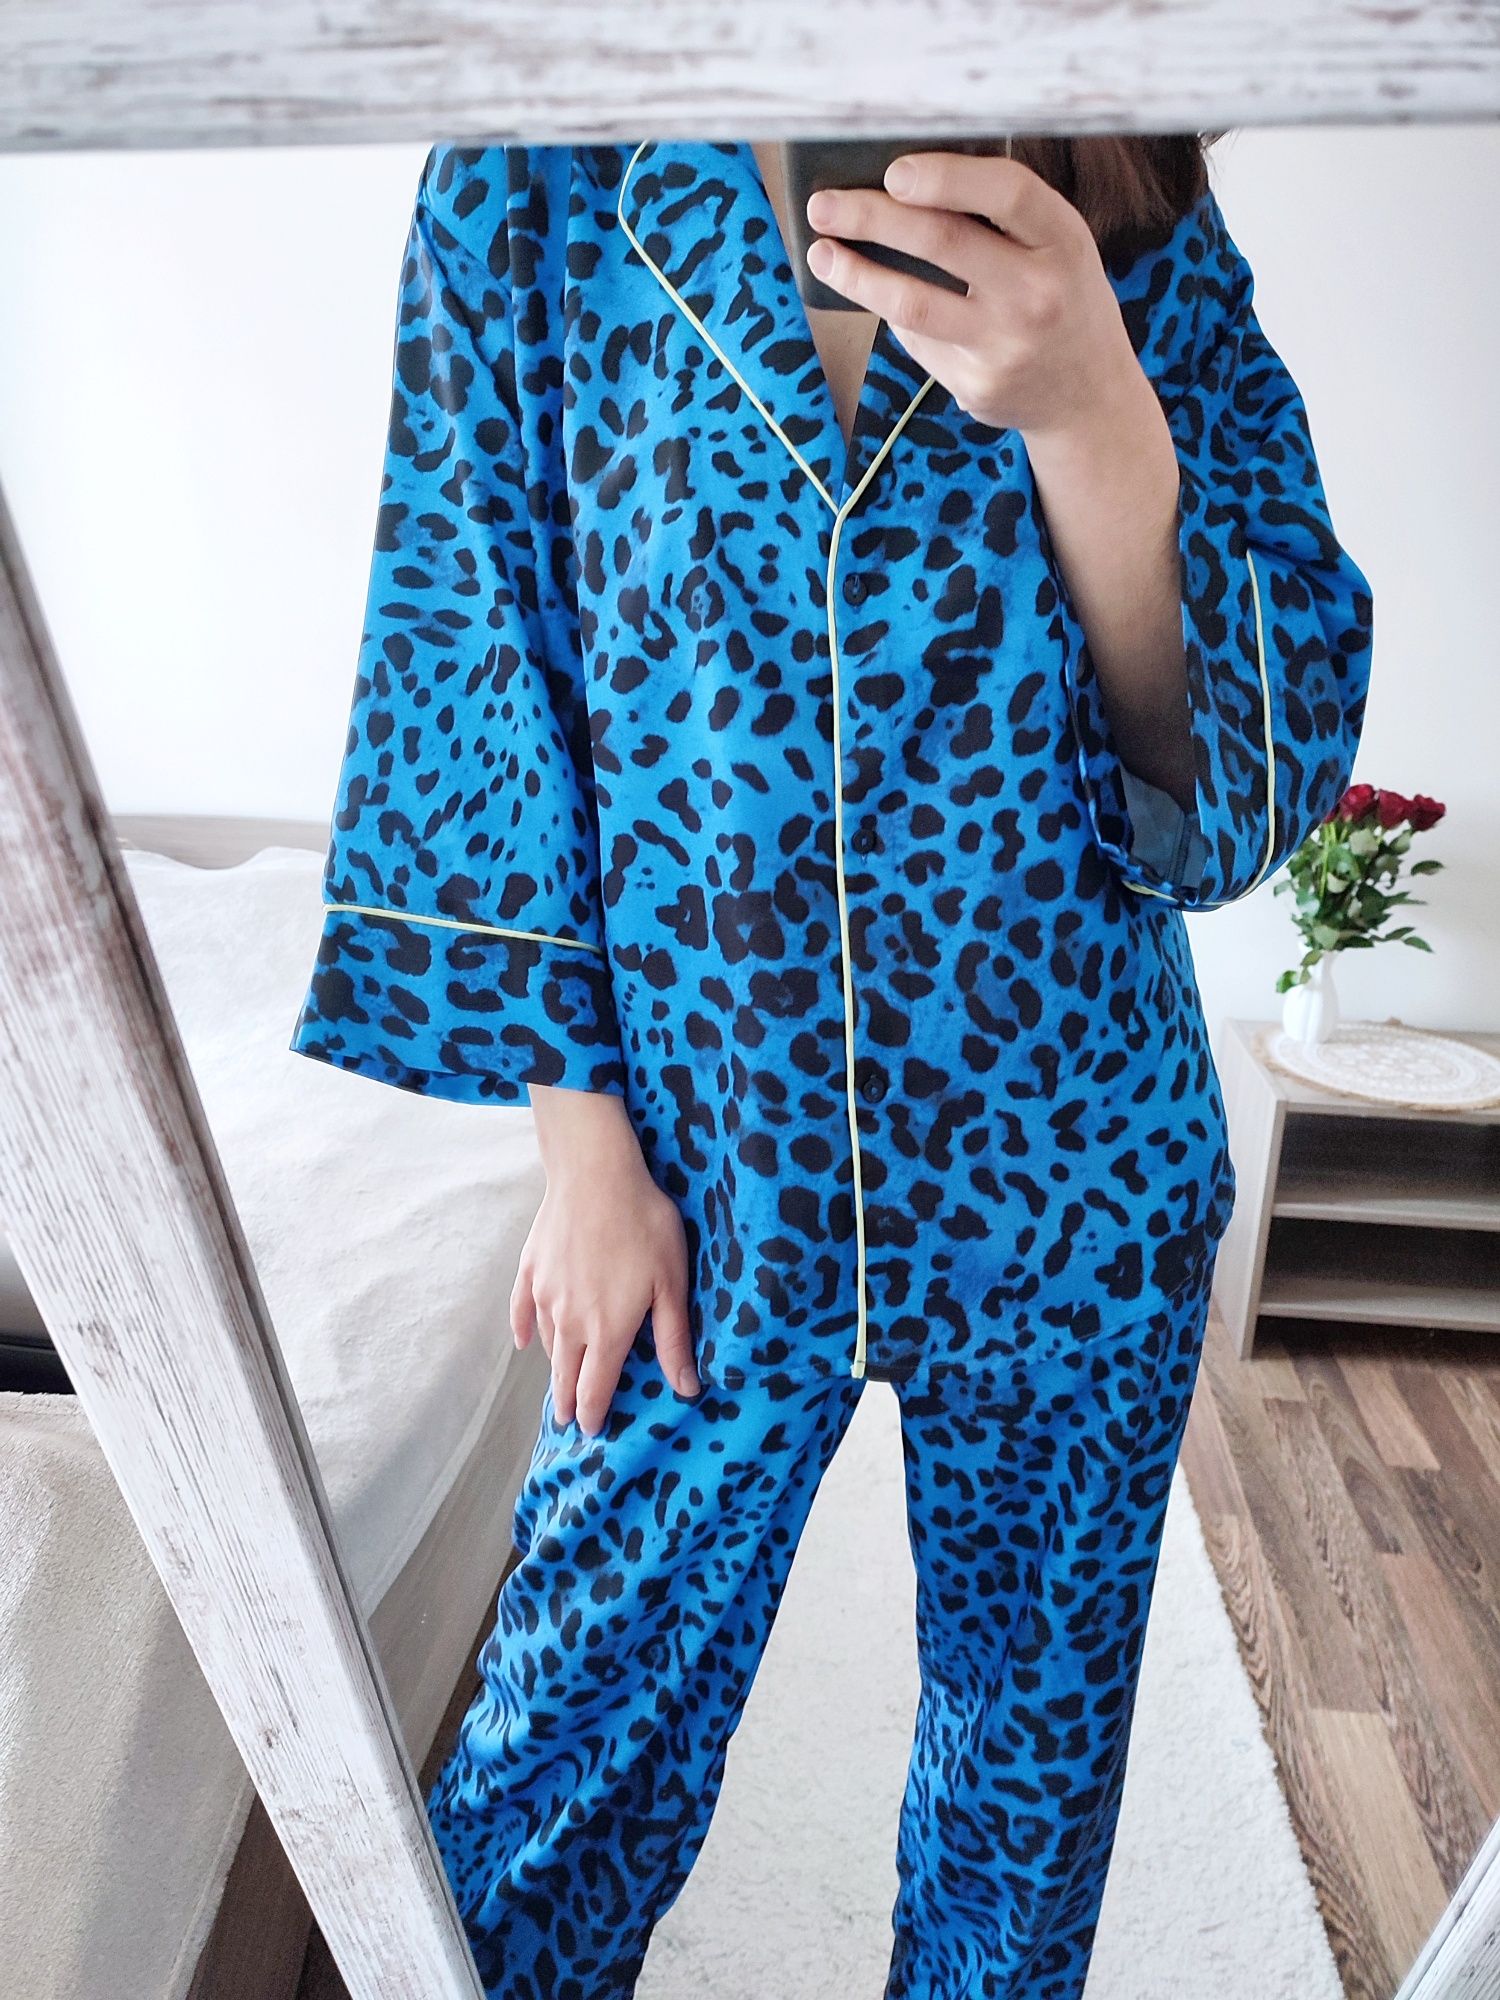 Nowy komplet piżamowy doskonałej jakości, homewear w bogatej kolorysty